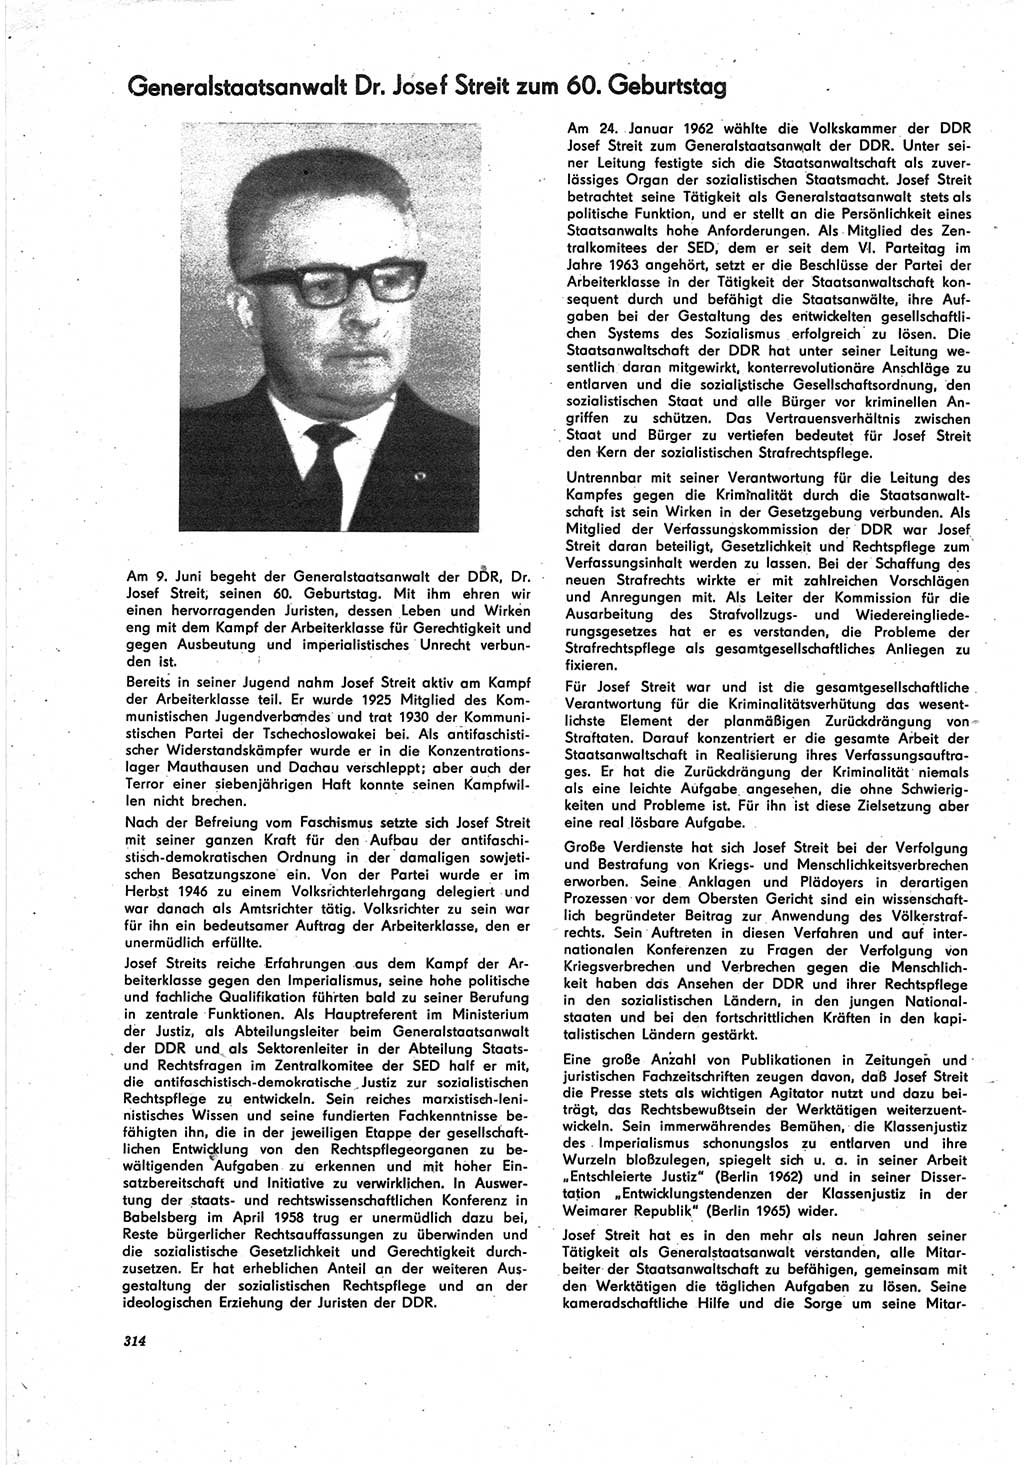 Neue Justiz (NJ), Zeitschrift für Recht und Rechtswissenschaft [Deutsche Demokratische Republik (DDR)], 25. Jahrgang 1971, Seite 314 (NJ DDR 1971, S. 314)